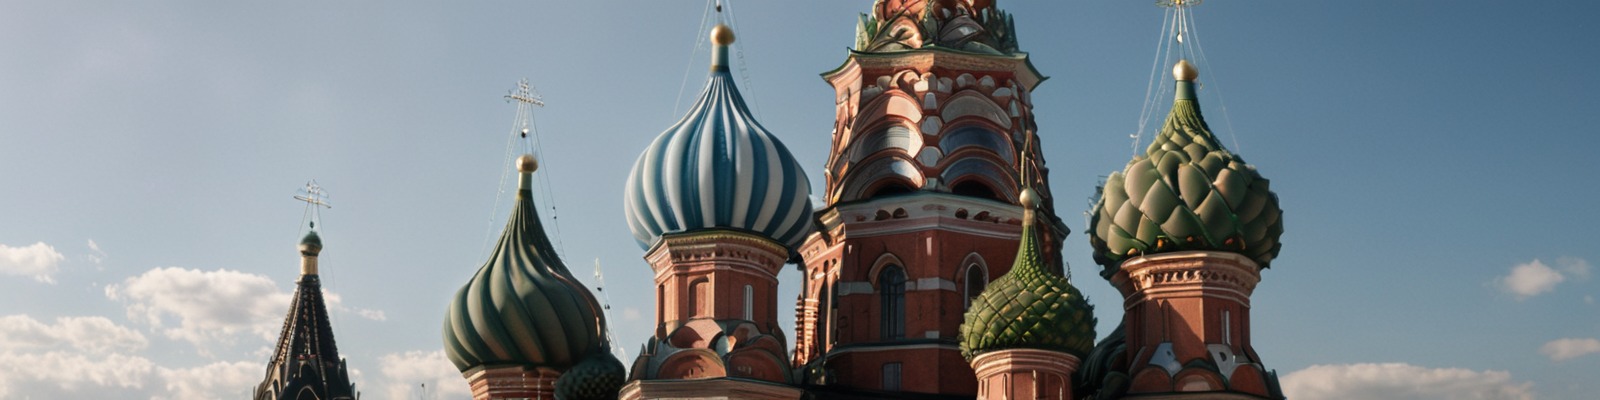 Широкоформатное изображение куполов собора Василия Блаженного